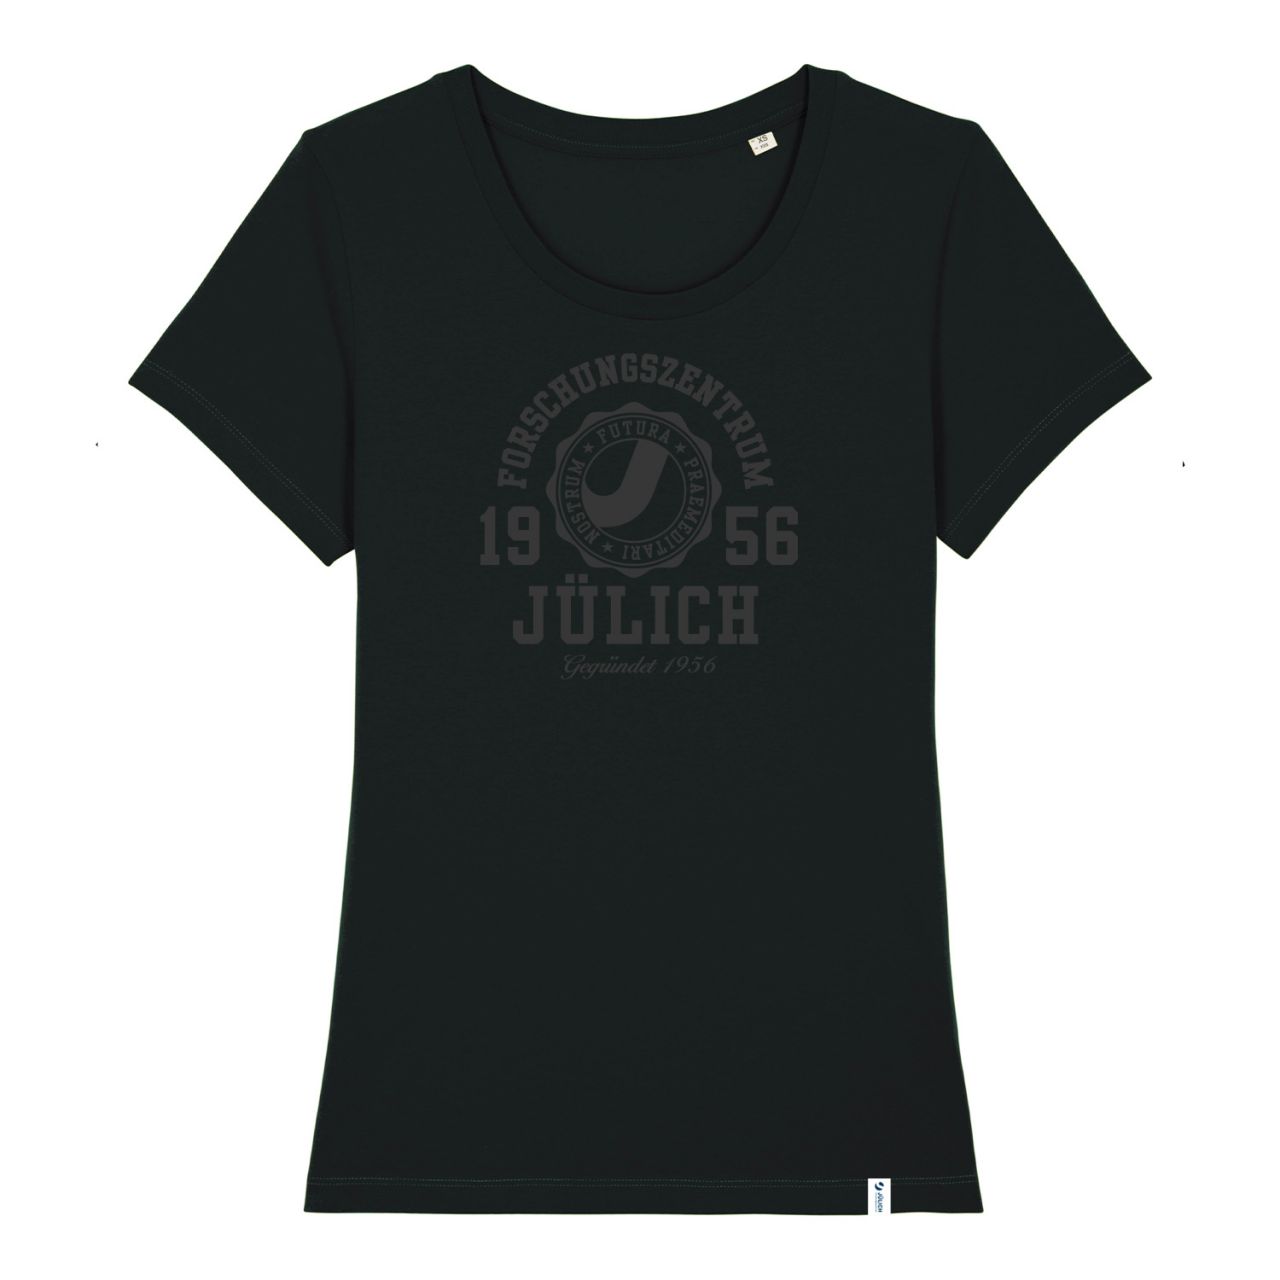 Women's Organic T-Shirt, black, marshall